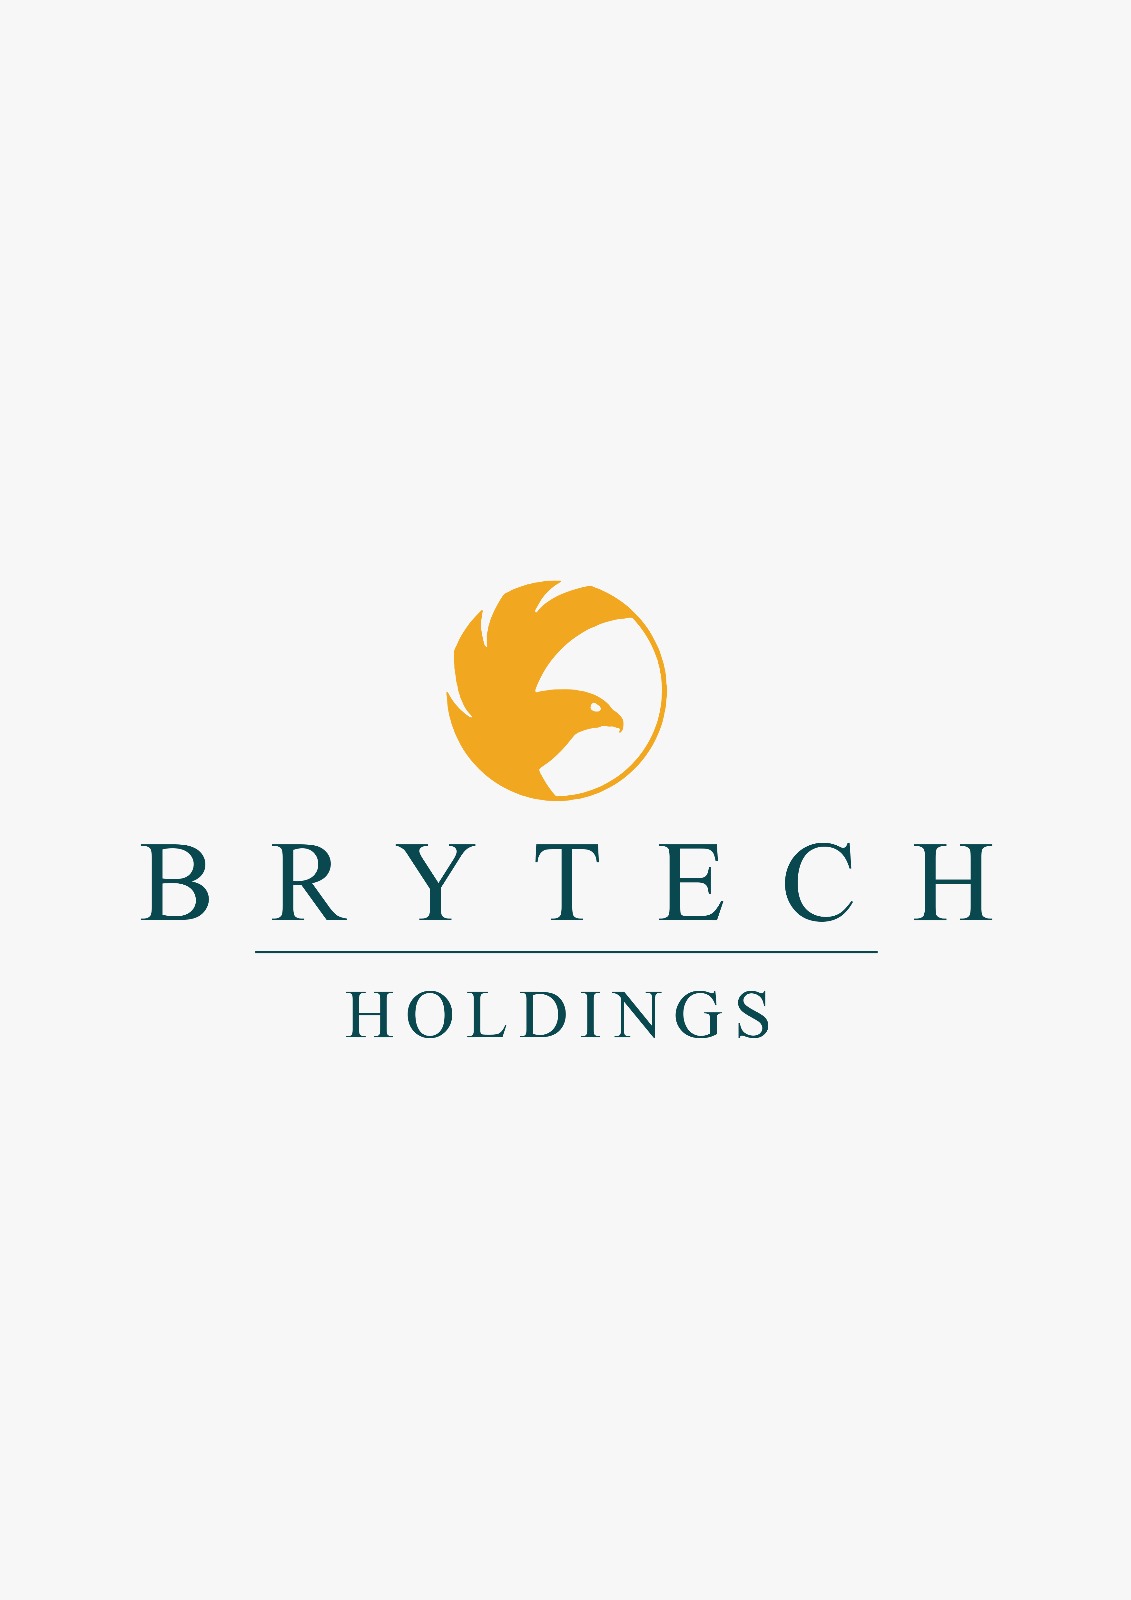 Brytech Holdings (Unverified) logo